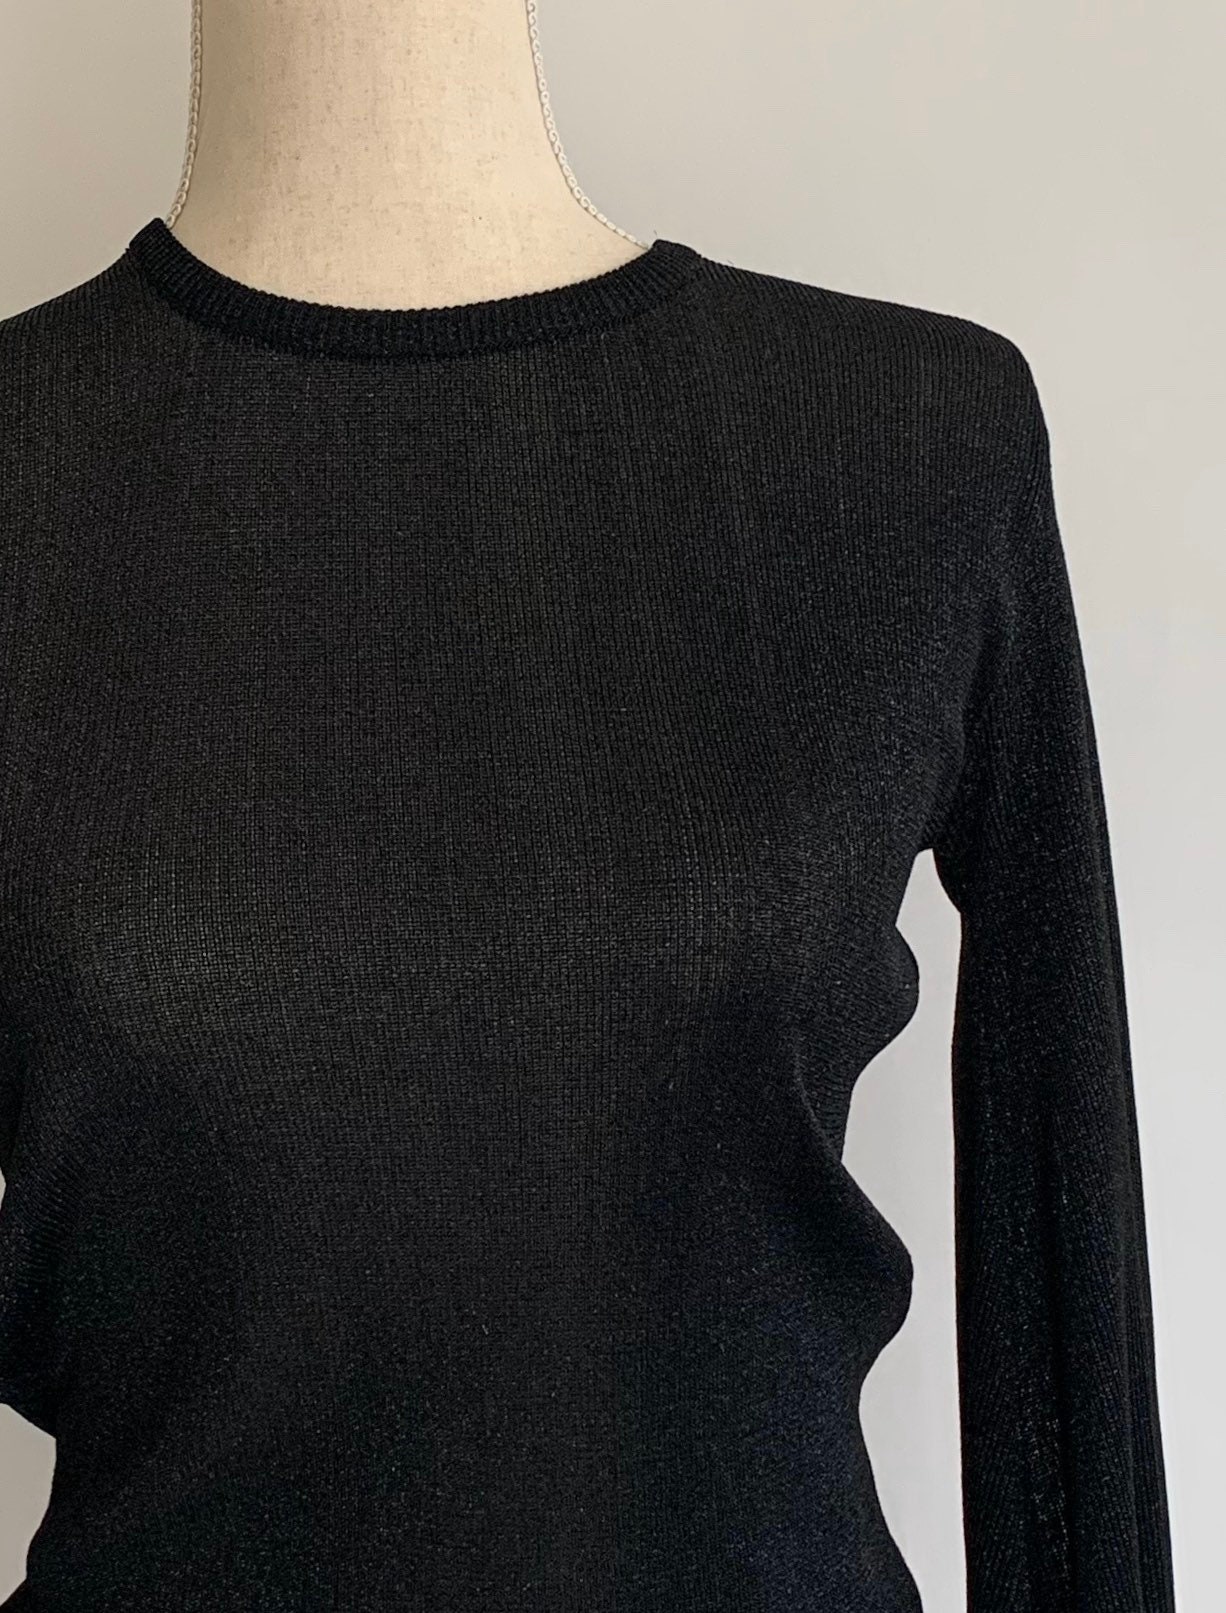 Minimalist Black Lurex Top Thin Semi Sheer Knit Sweater Vintage Tami ...